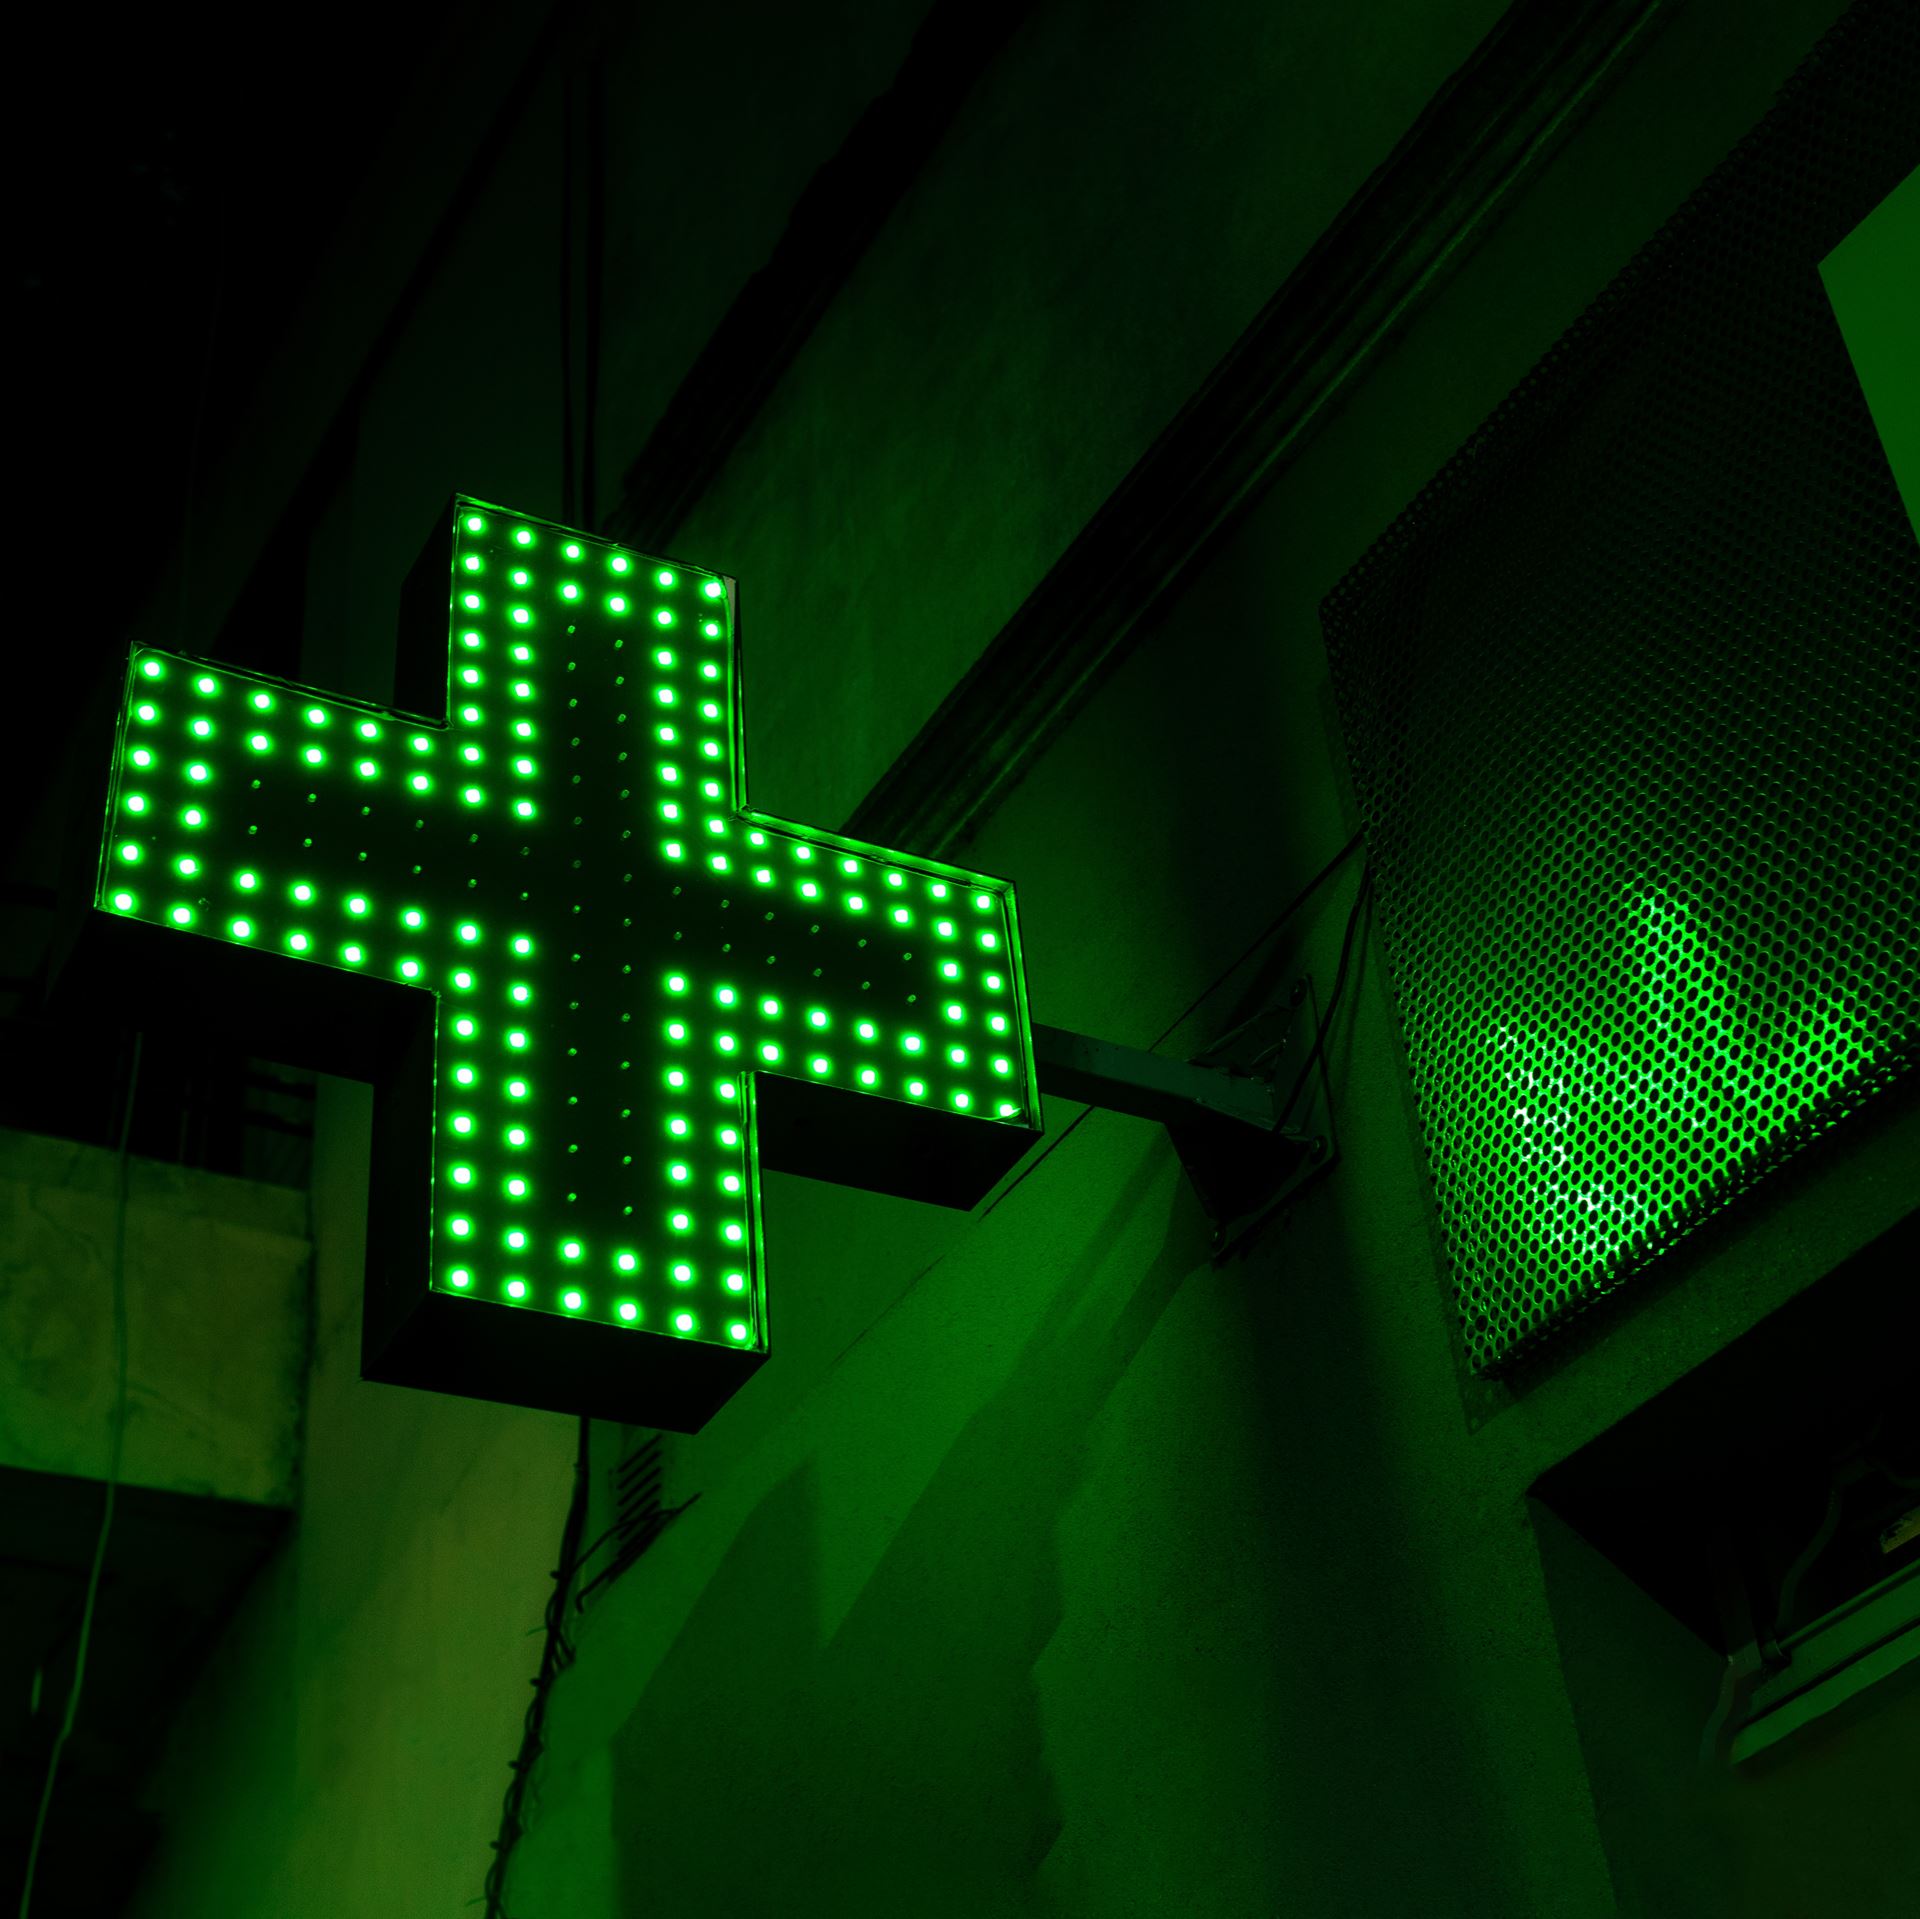 Green pharmacy sign